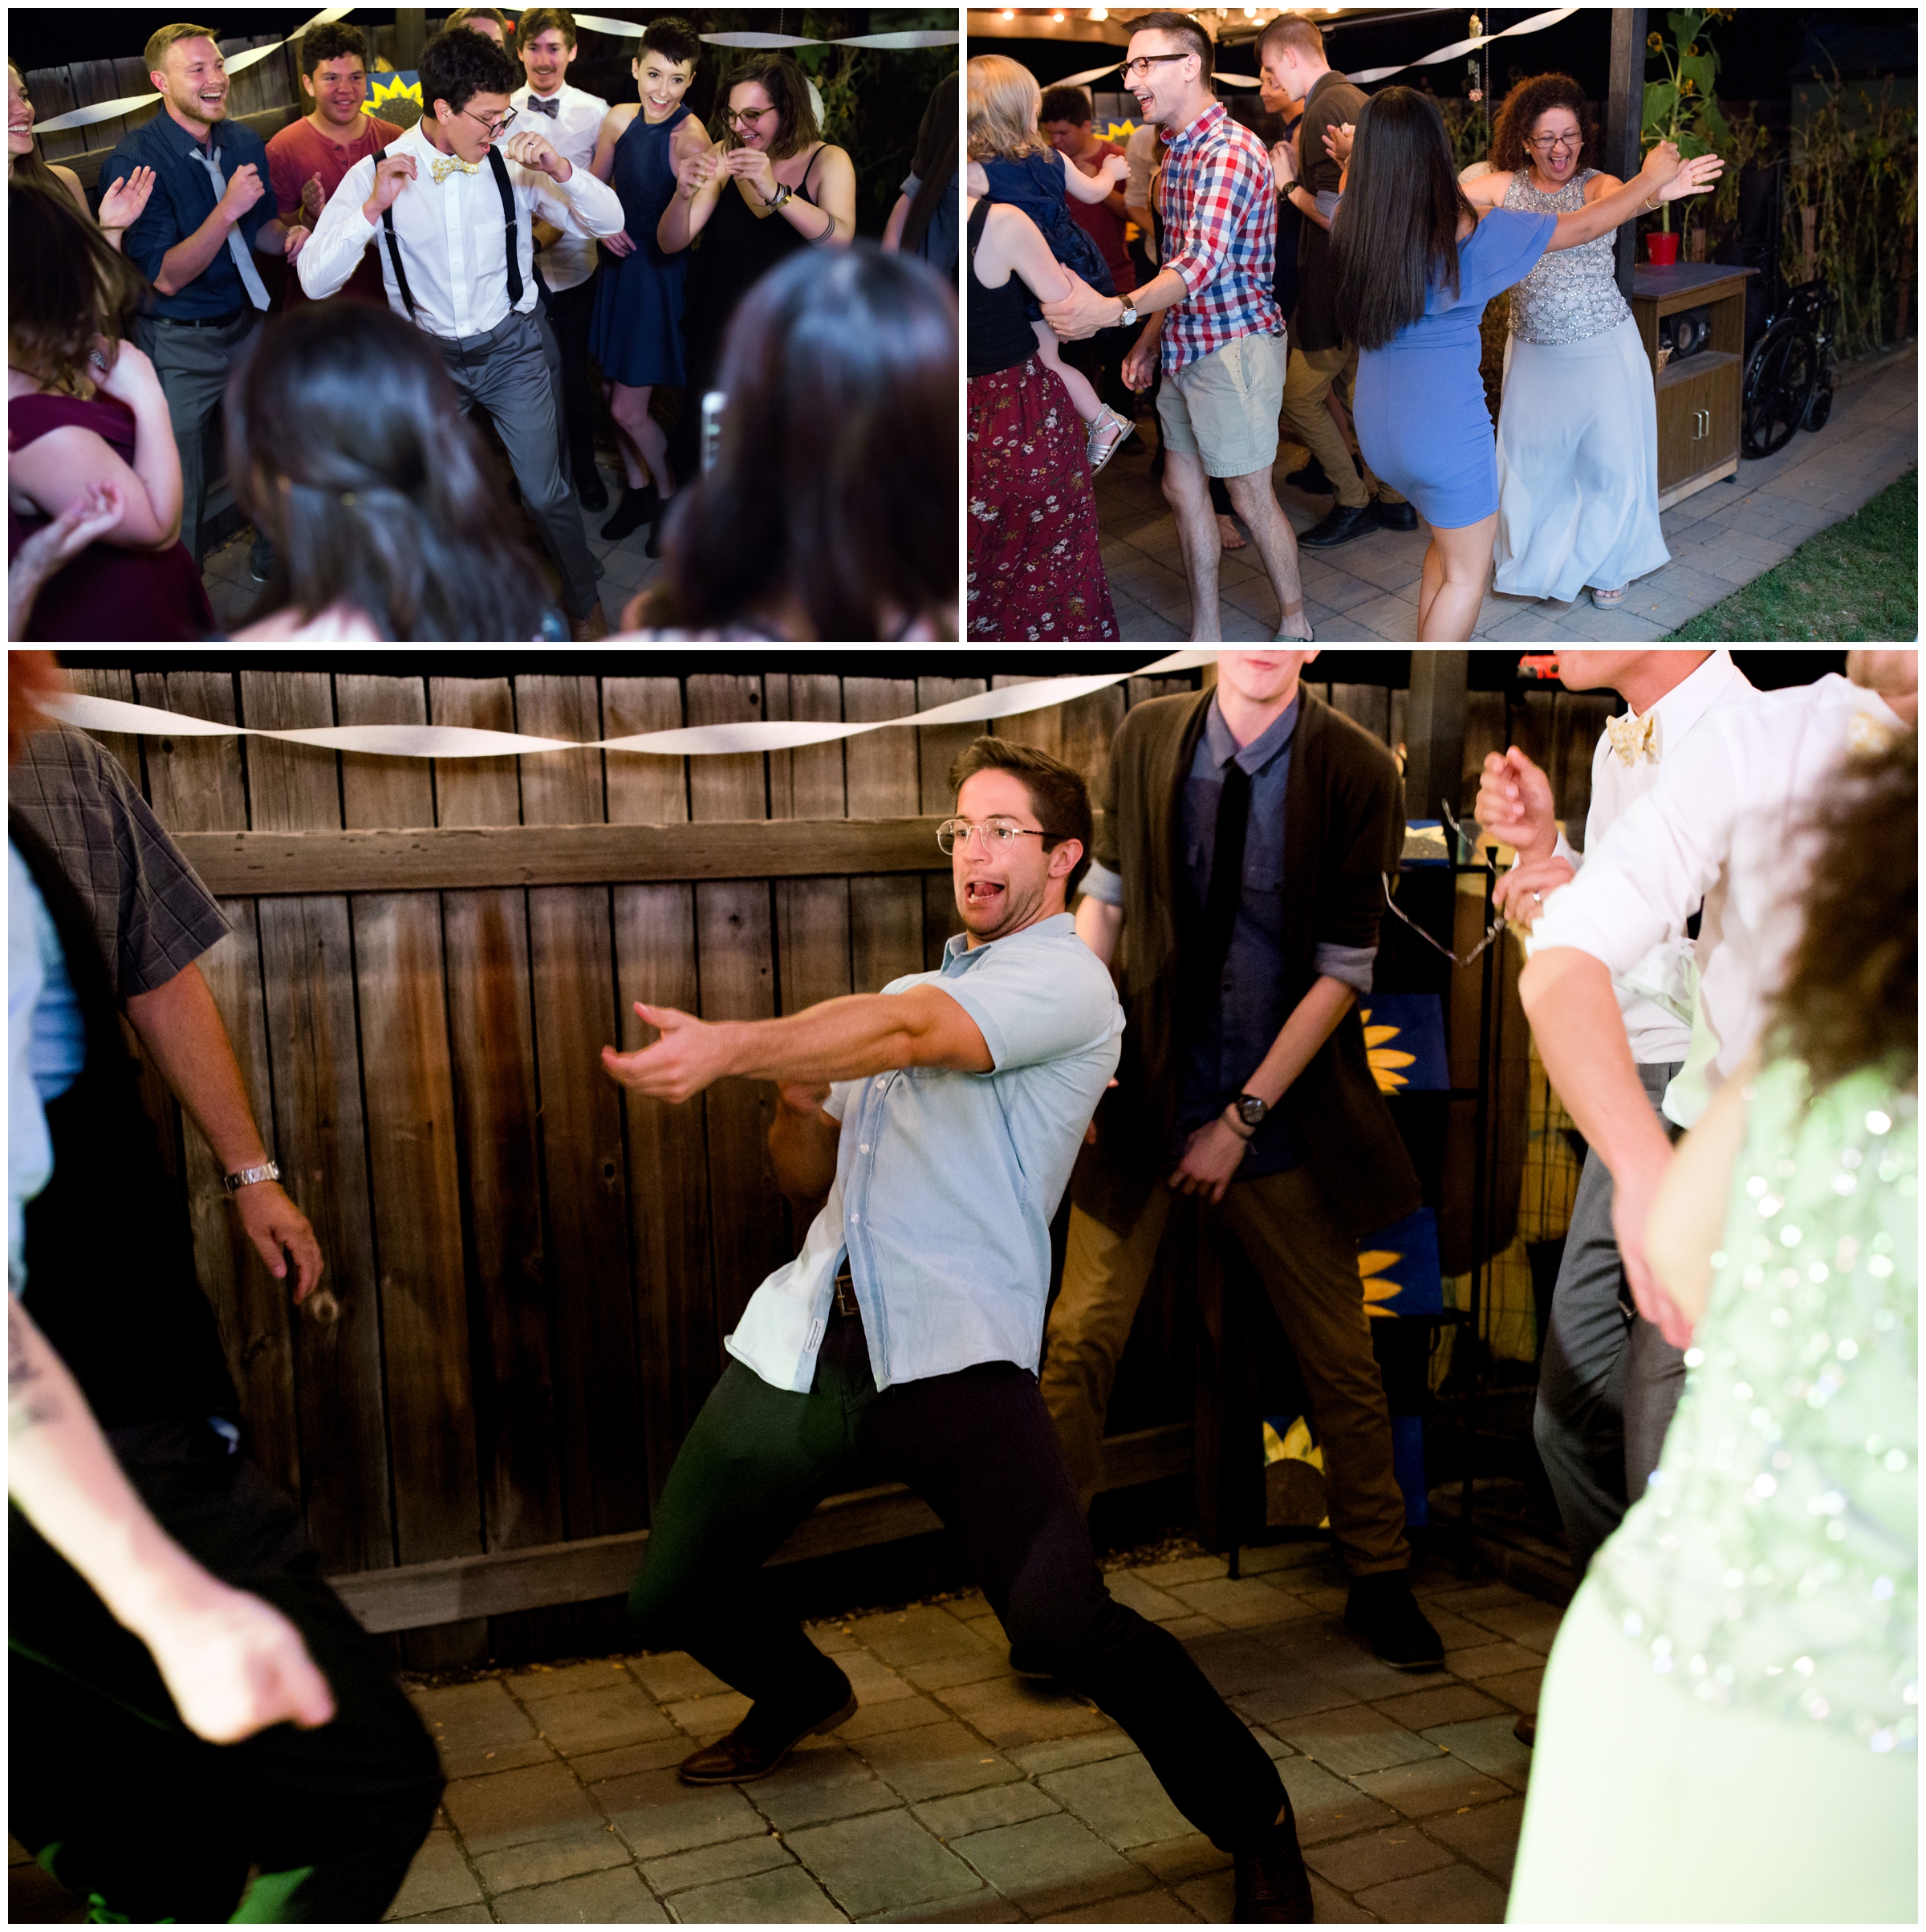 guests dancing at CO backyard wedding reception 